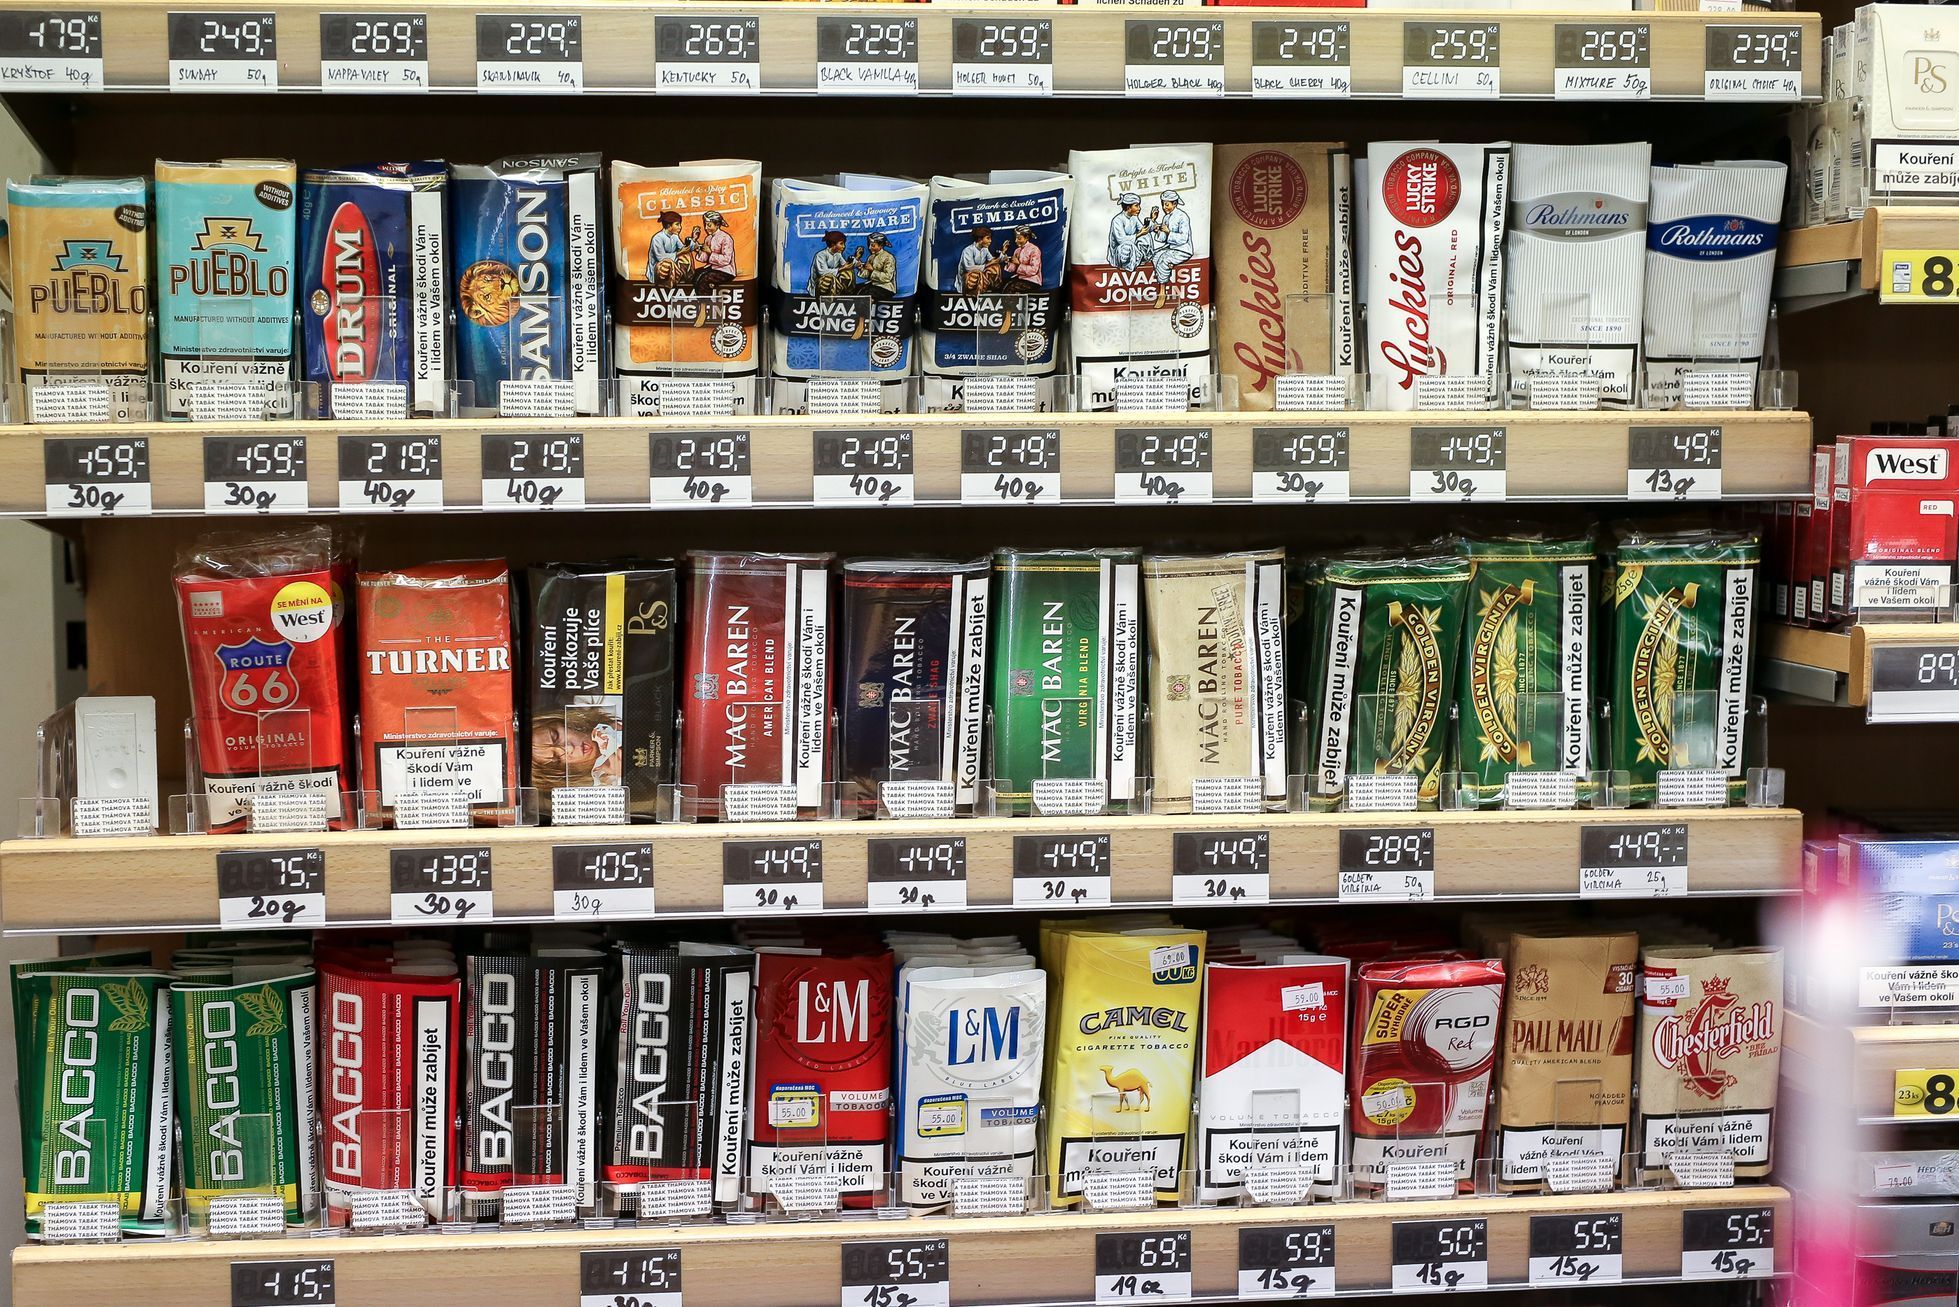 Cigarety, výstražné obrázky, rakovina, tabák, kouření může zabíjet - ilustrační foto